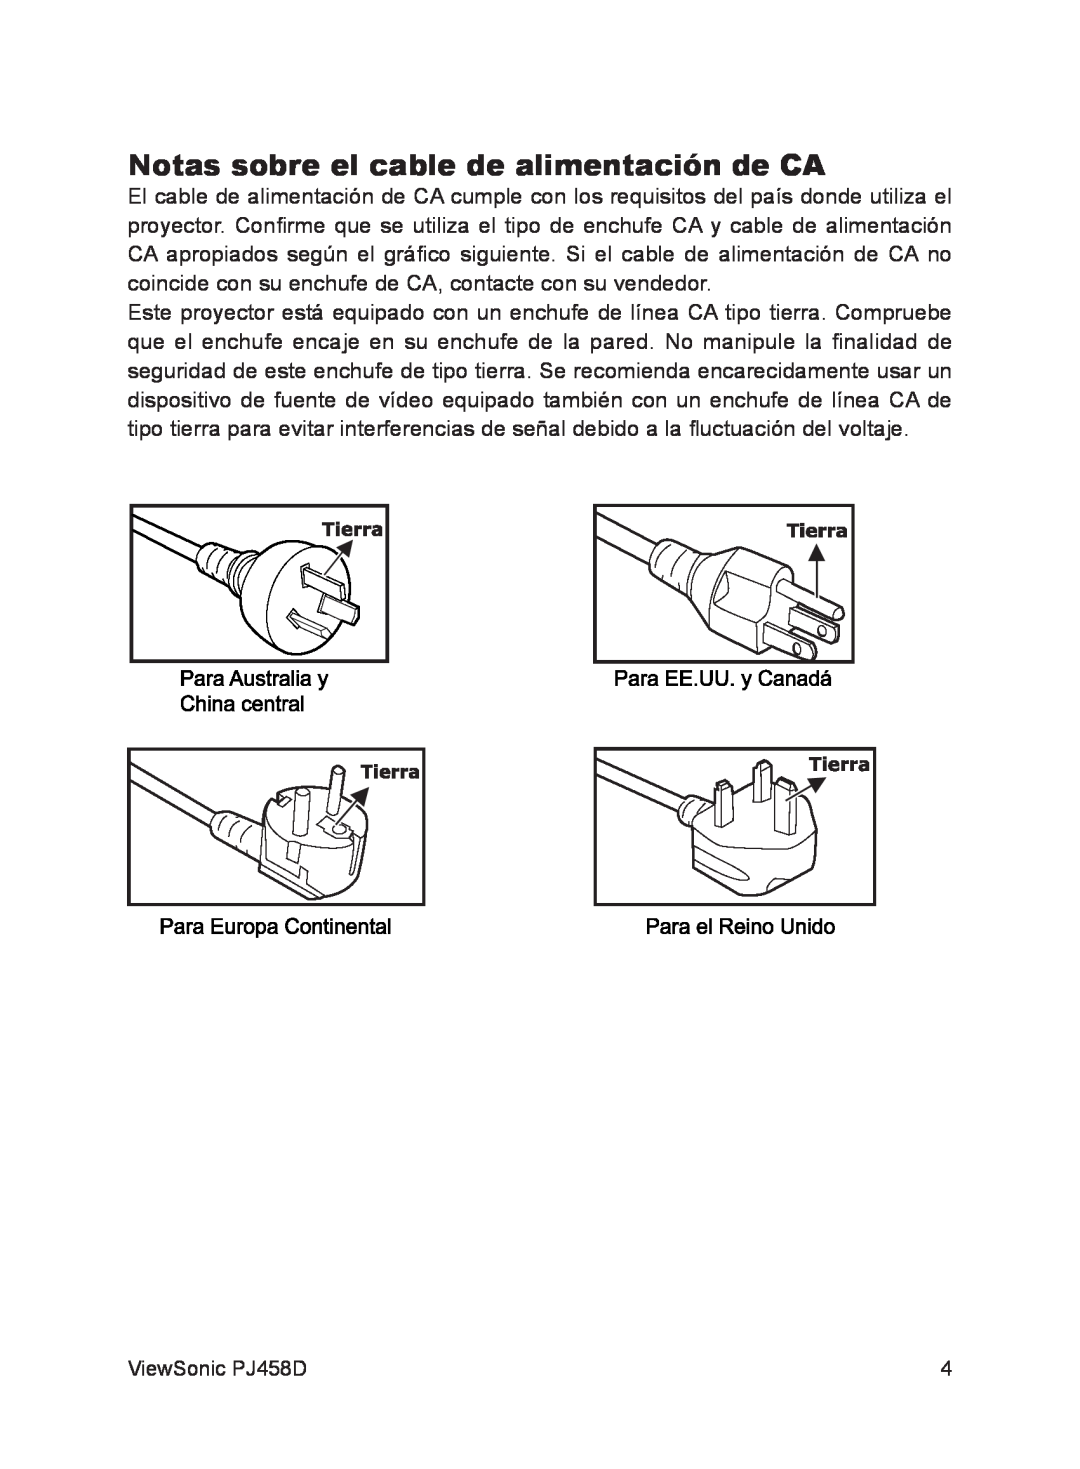 ViewSonic VS10872 manual Notas sobre el cable de alimentación de CA 